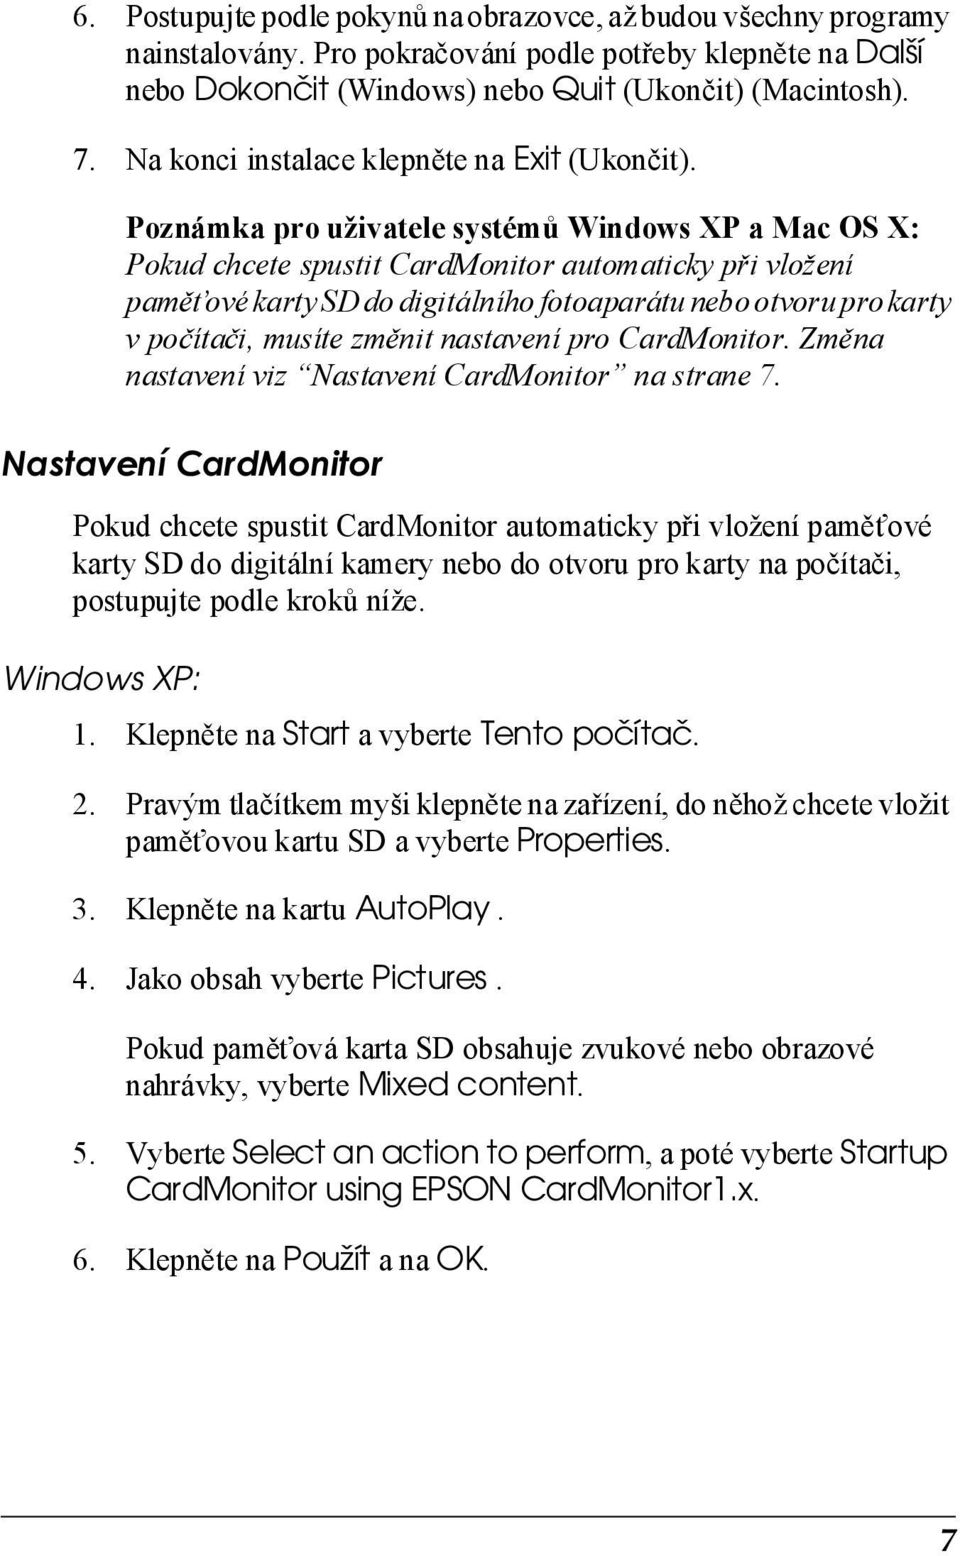 Poznámka pro uživatele systémů Windows XP a Mac OS X: Pokud chcete spustit CardMonitor automaticky při vložení pamět ové karty SD do digitálního fotoaparátu nebo otvoru pro karty v počítači, musíte